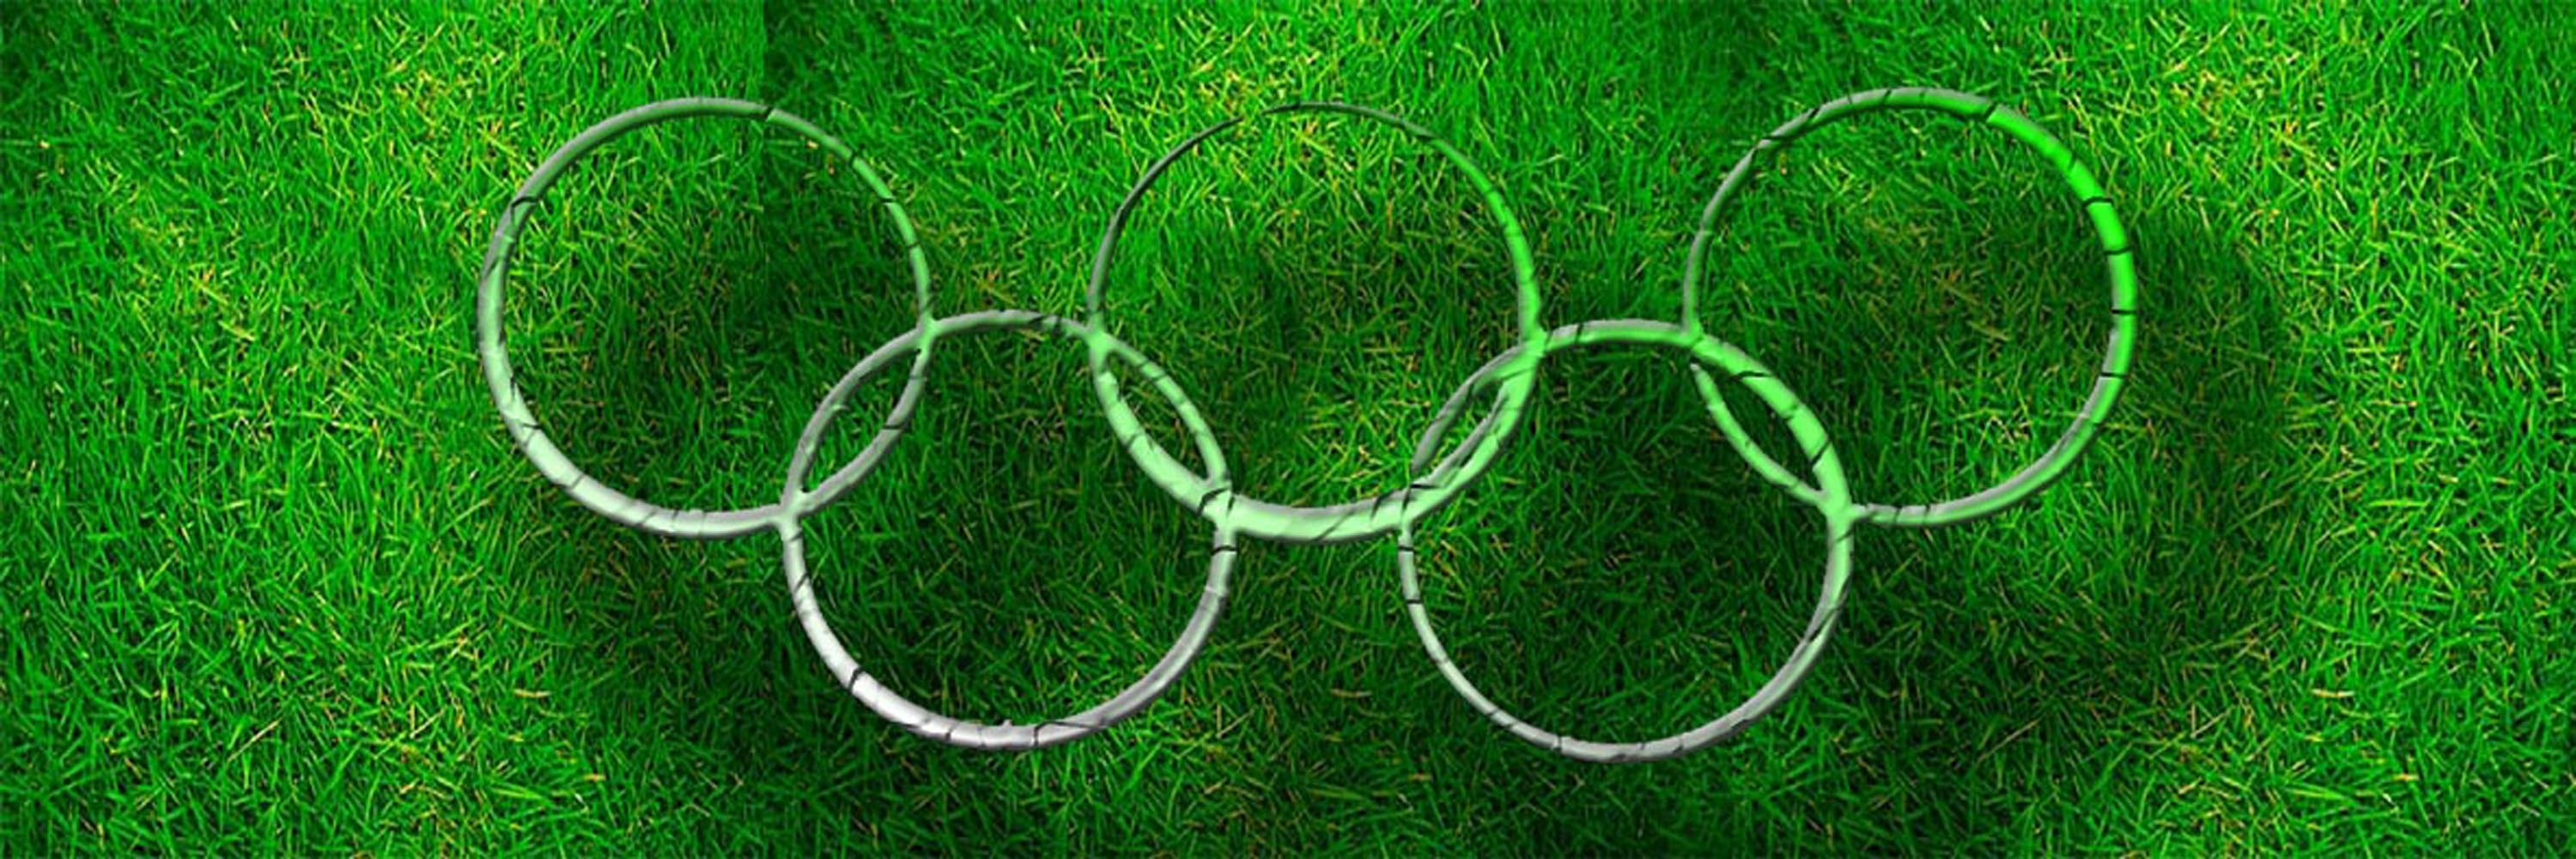 Cornice composta da i cinque anelli olimpici concatenati sullo sfondo di un prato verde 